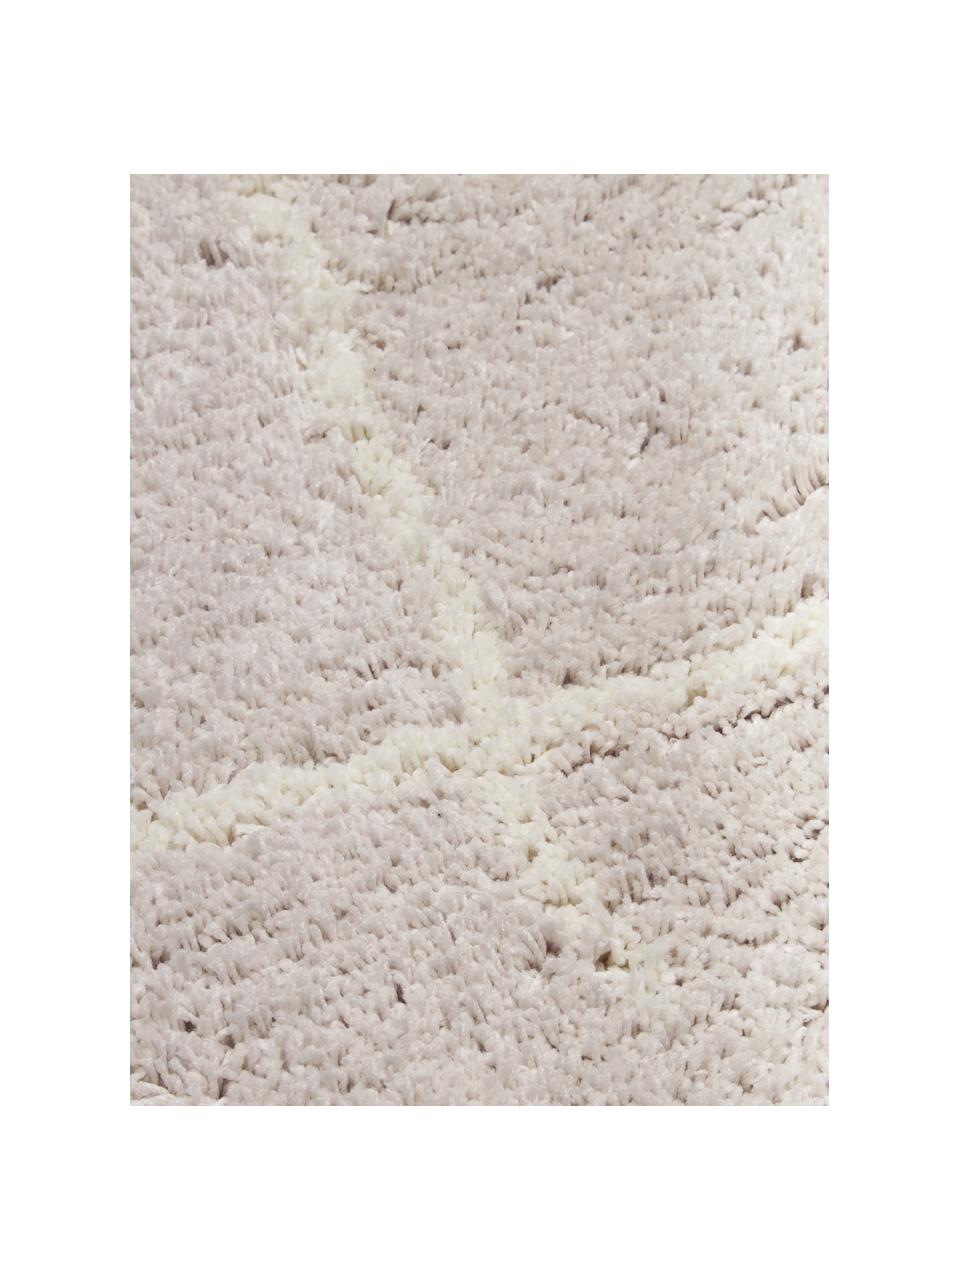 Flauschiger Hochflor-Teppich Amelie, handgetuftet, Flor: 100 % Polyester, Beige, Cremeweiß, B 160 x L 230 cm (Größe M)